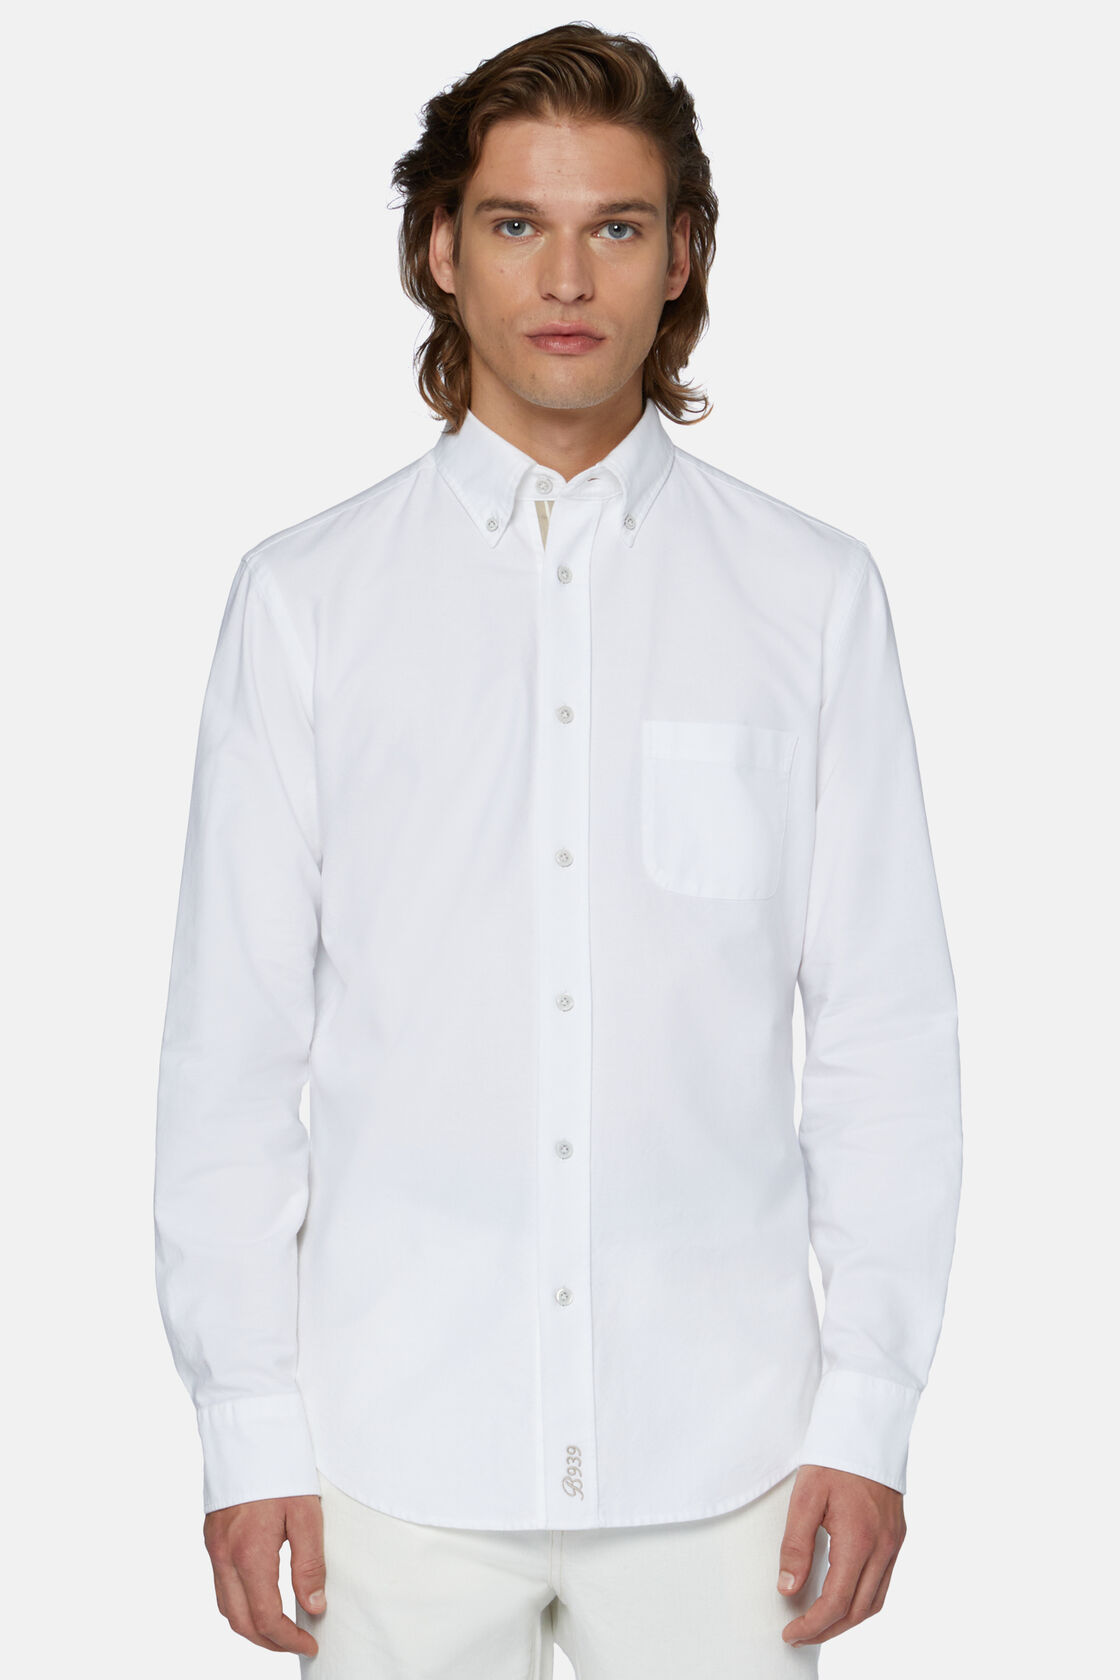 Λευκό πουκάμισο Oxford από οργανικό βαμβάκι, με κανονική εφαρμογή, White, hi-res